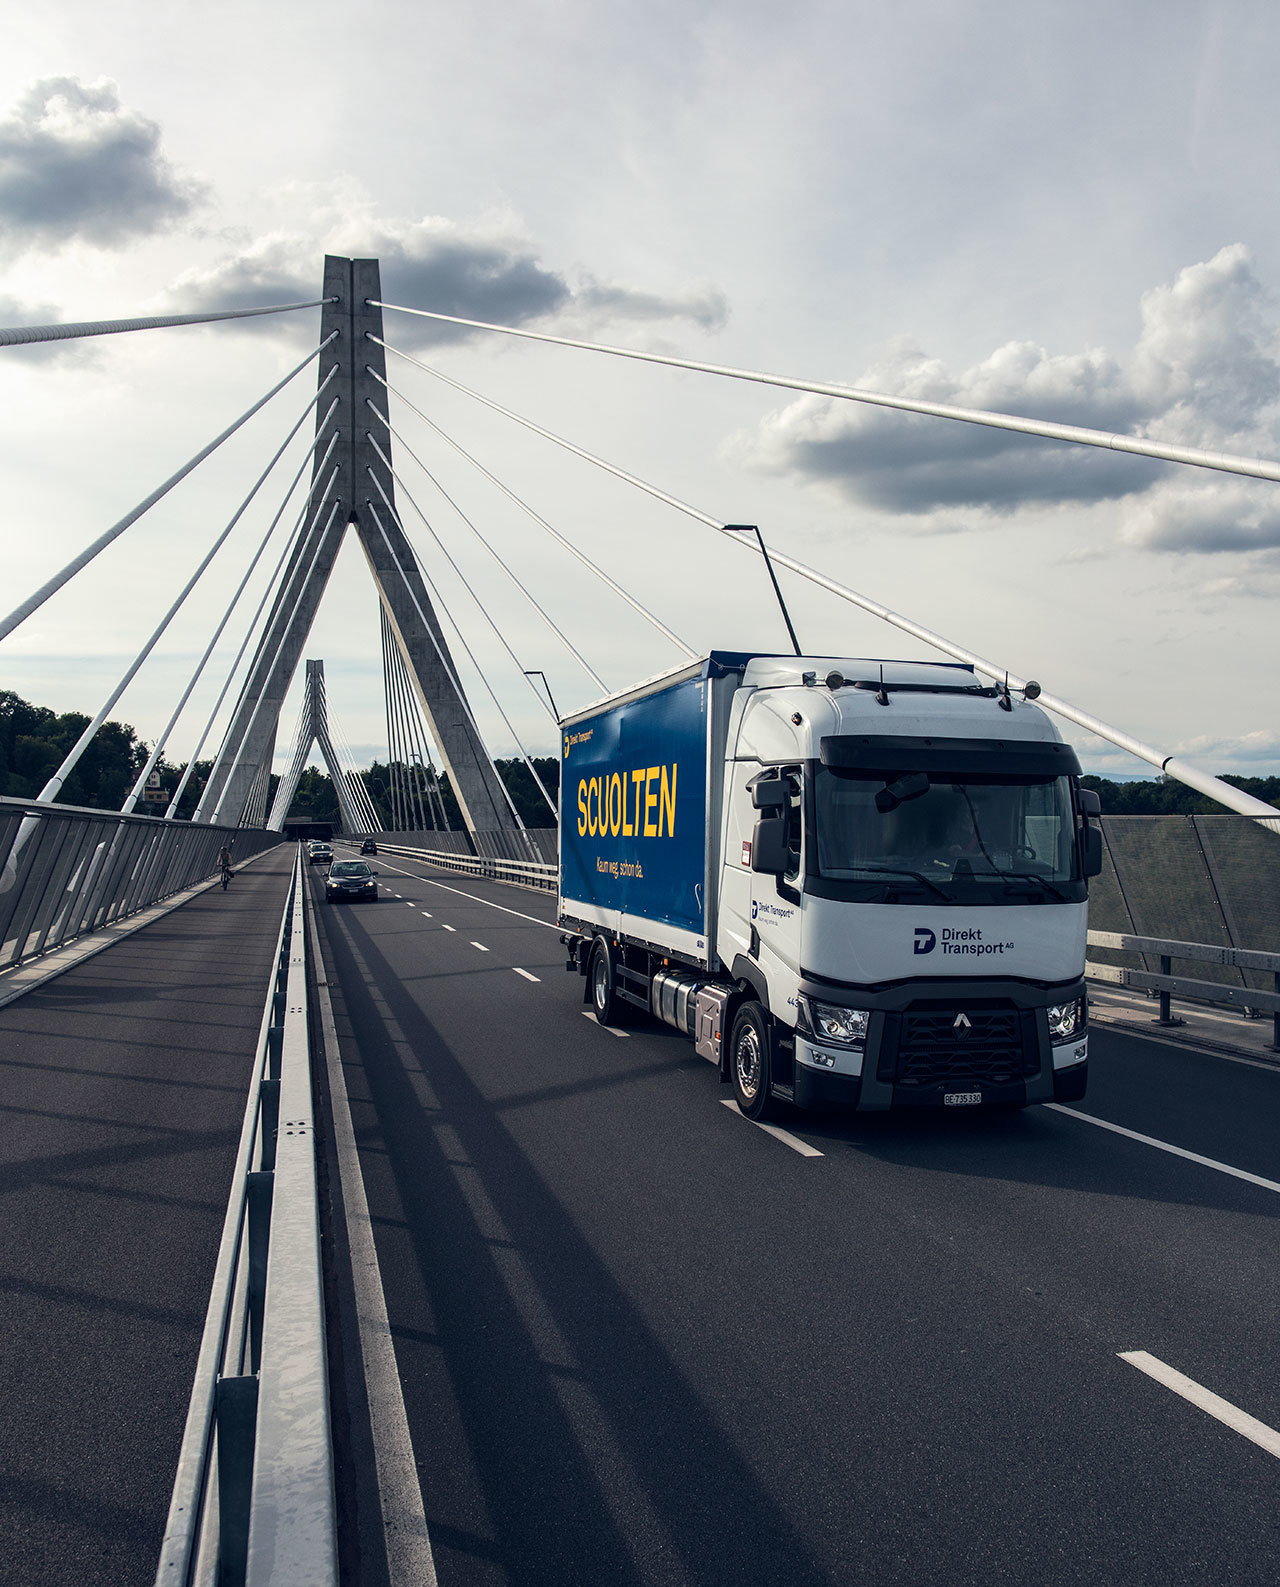 referenzen-lastwagen-der-firma-direkt-transport-ag-auf-bruecke.jpg